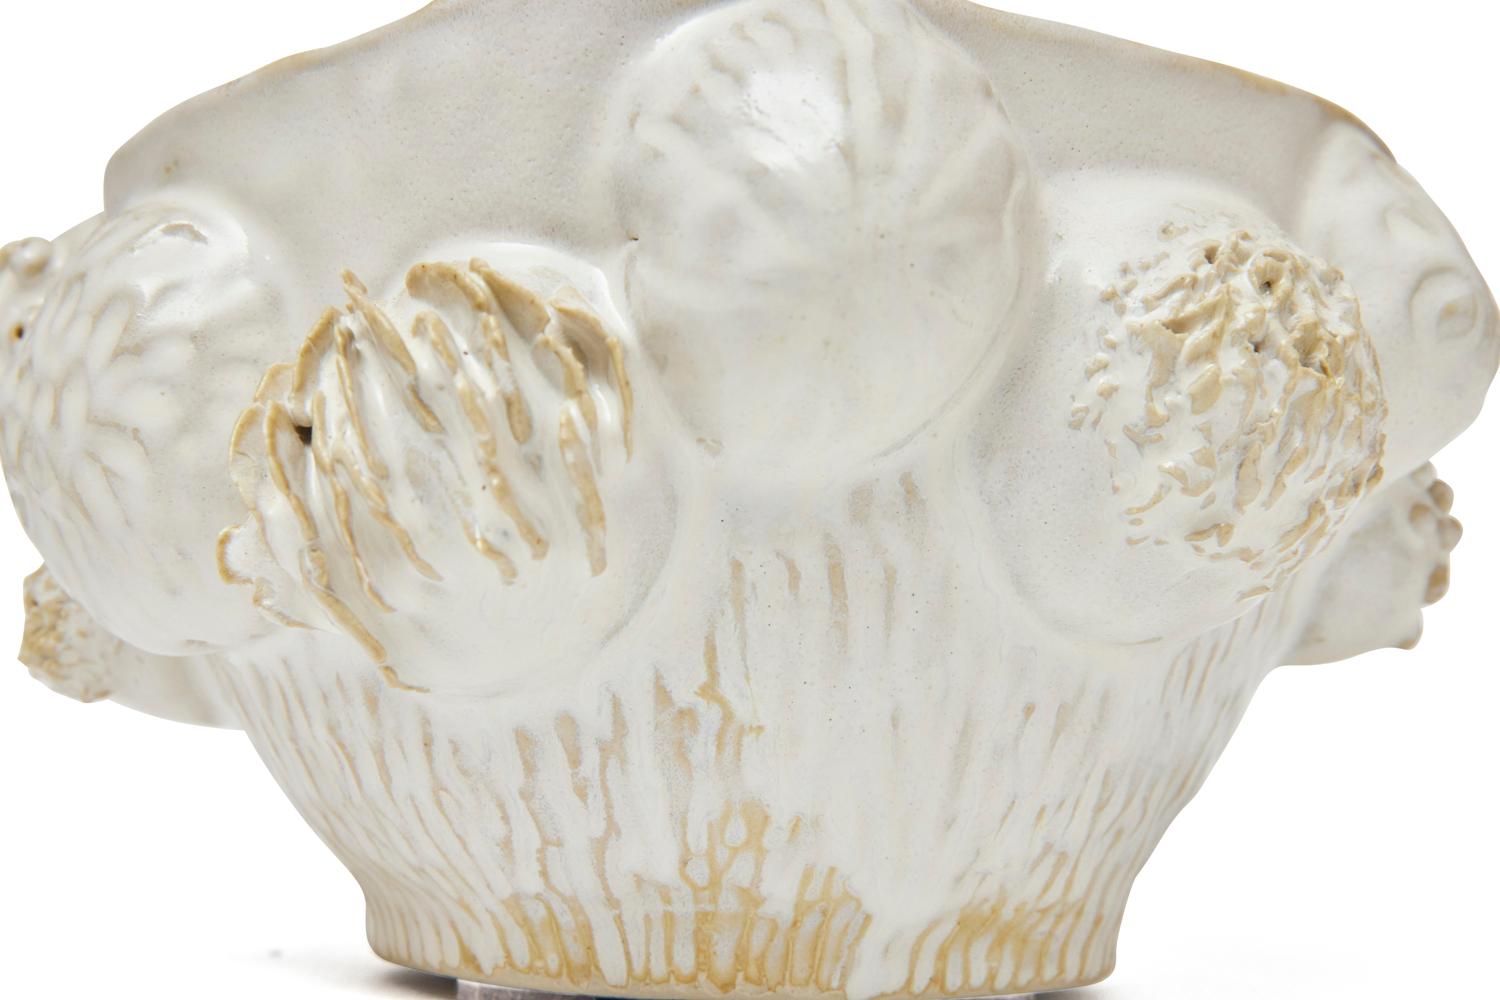 Botanica Bowl in Glazed Ceramic by Trish DeMasi For Sale 3